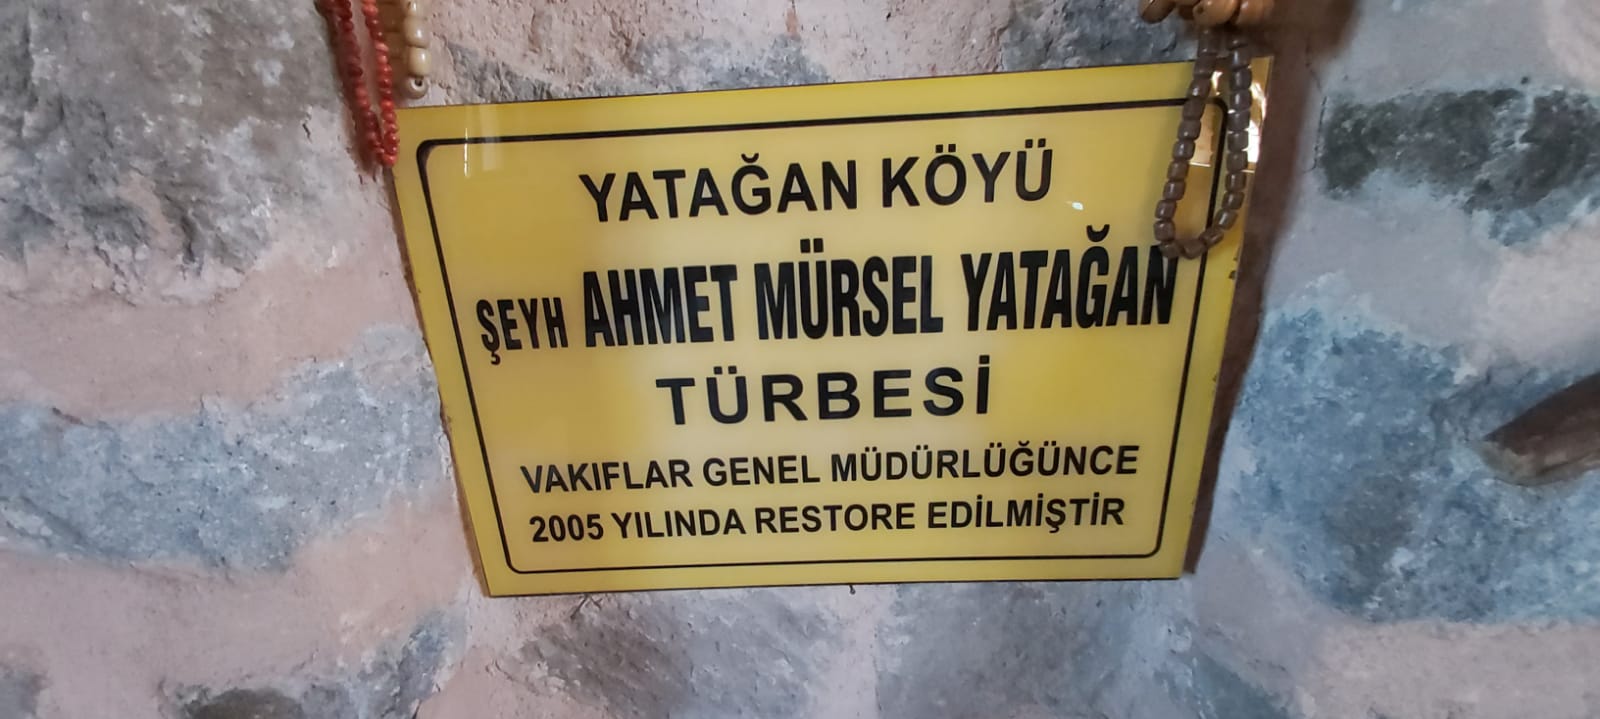 Şeyh Ahmet Yatağan Mürsel